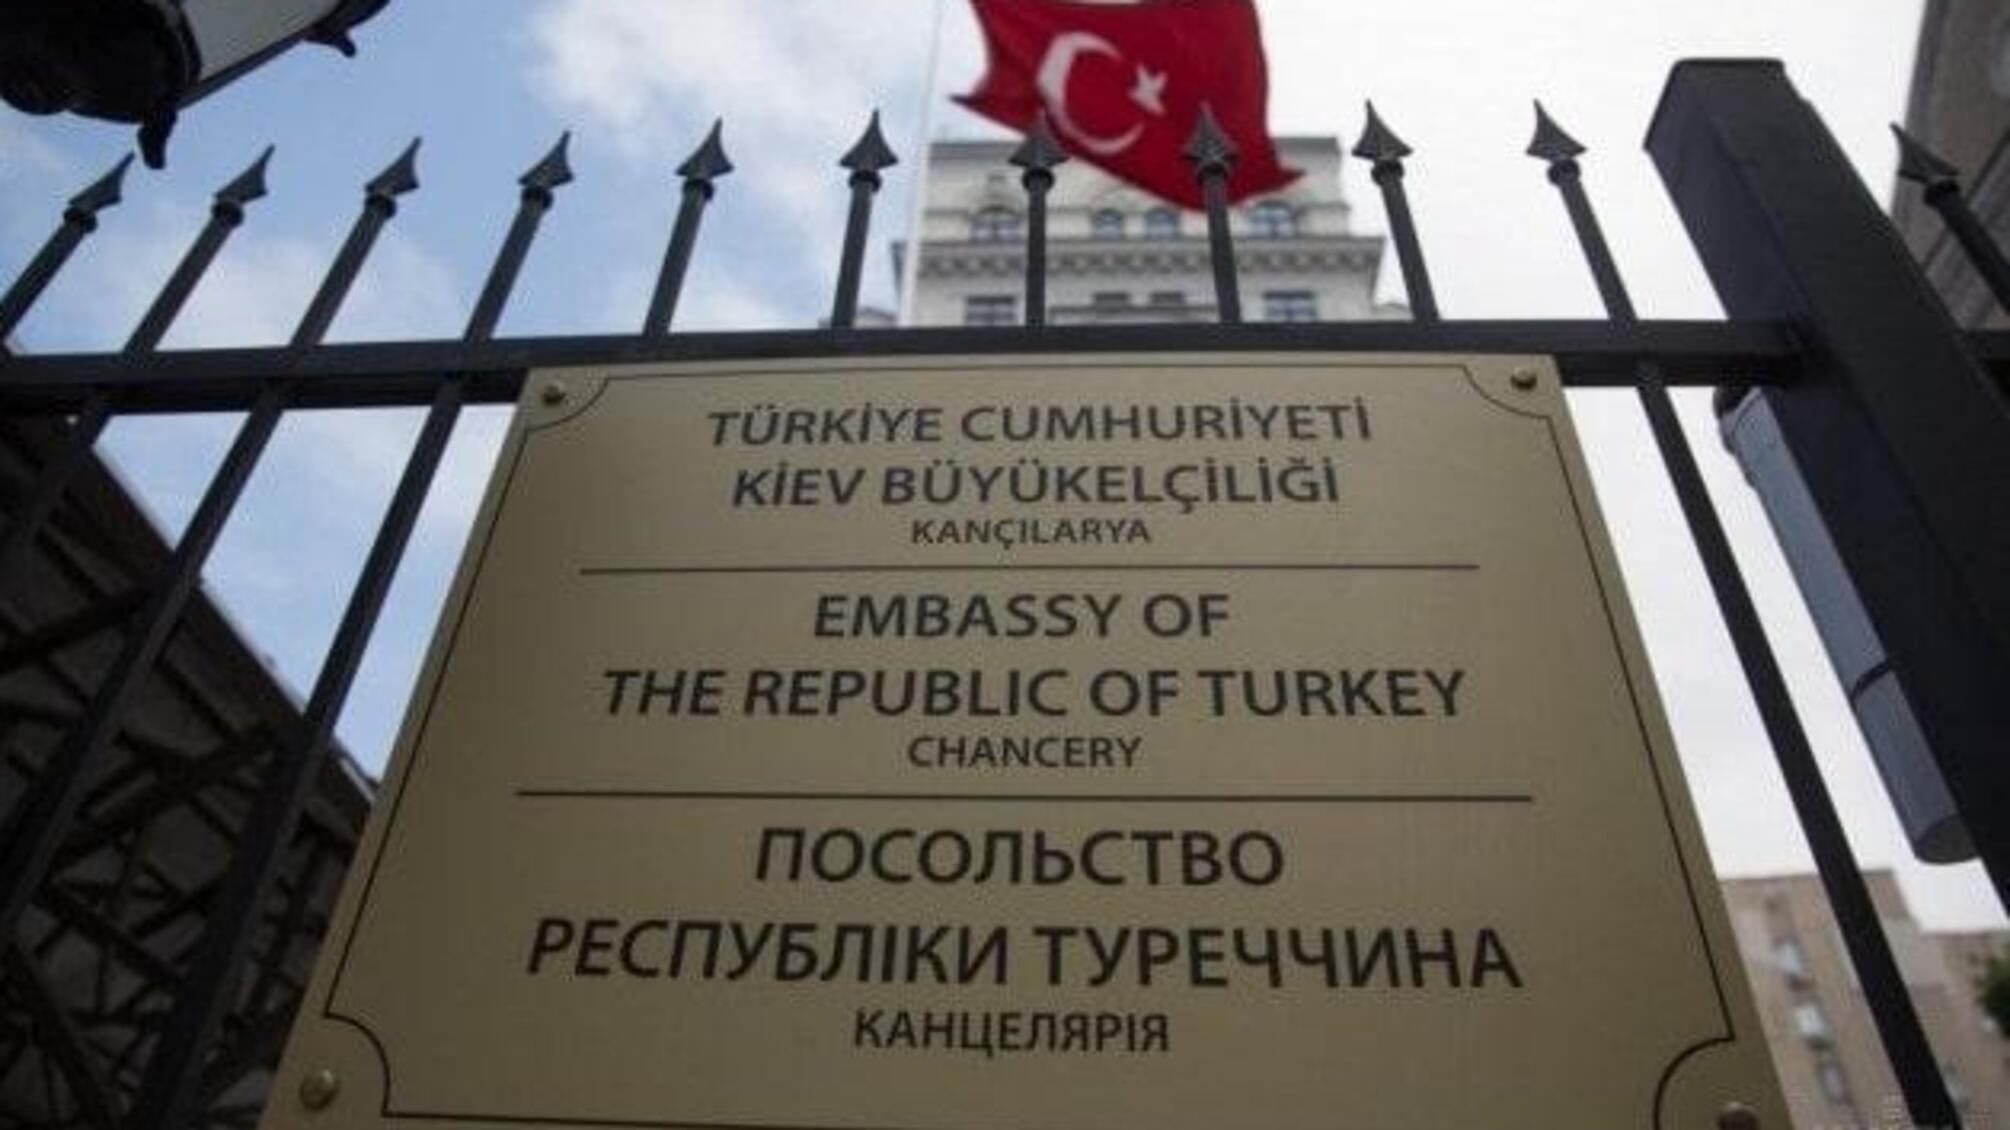 Співробітники посольства Туреччини повернулися до Києва